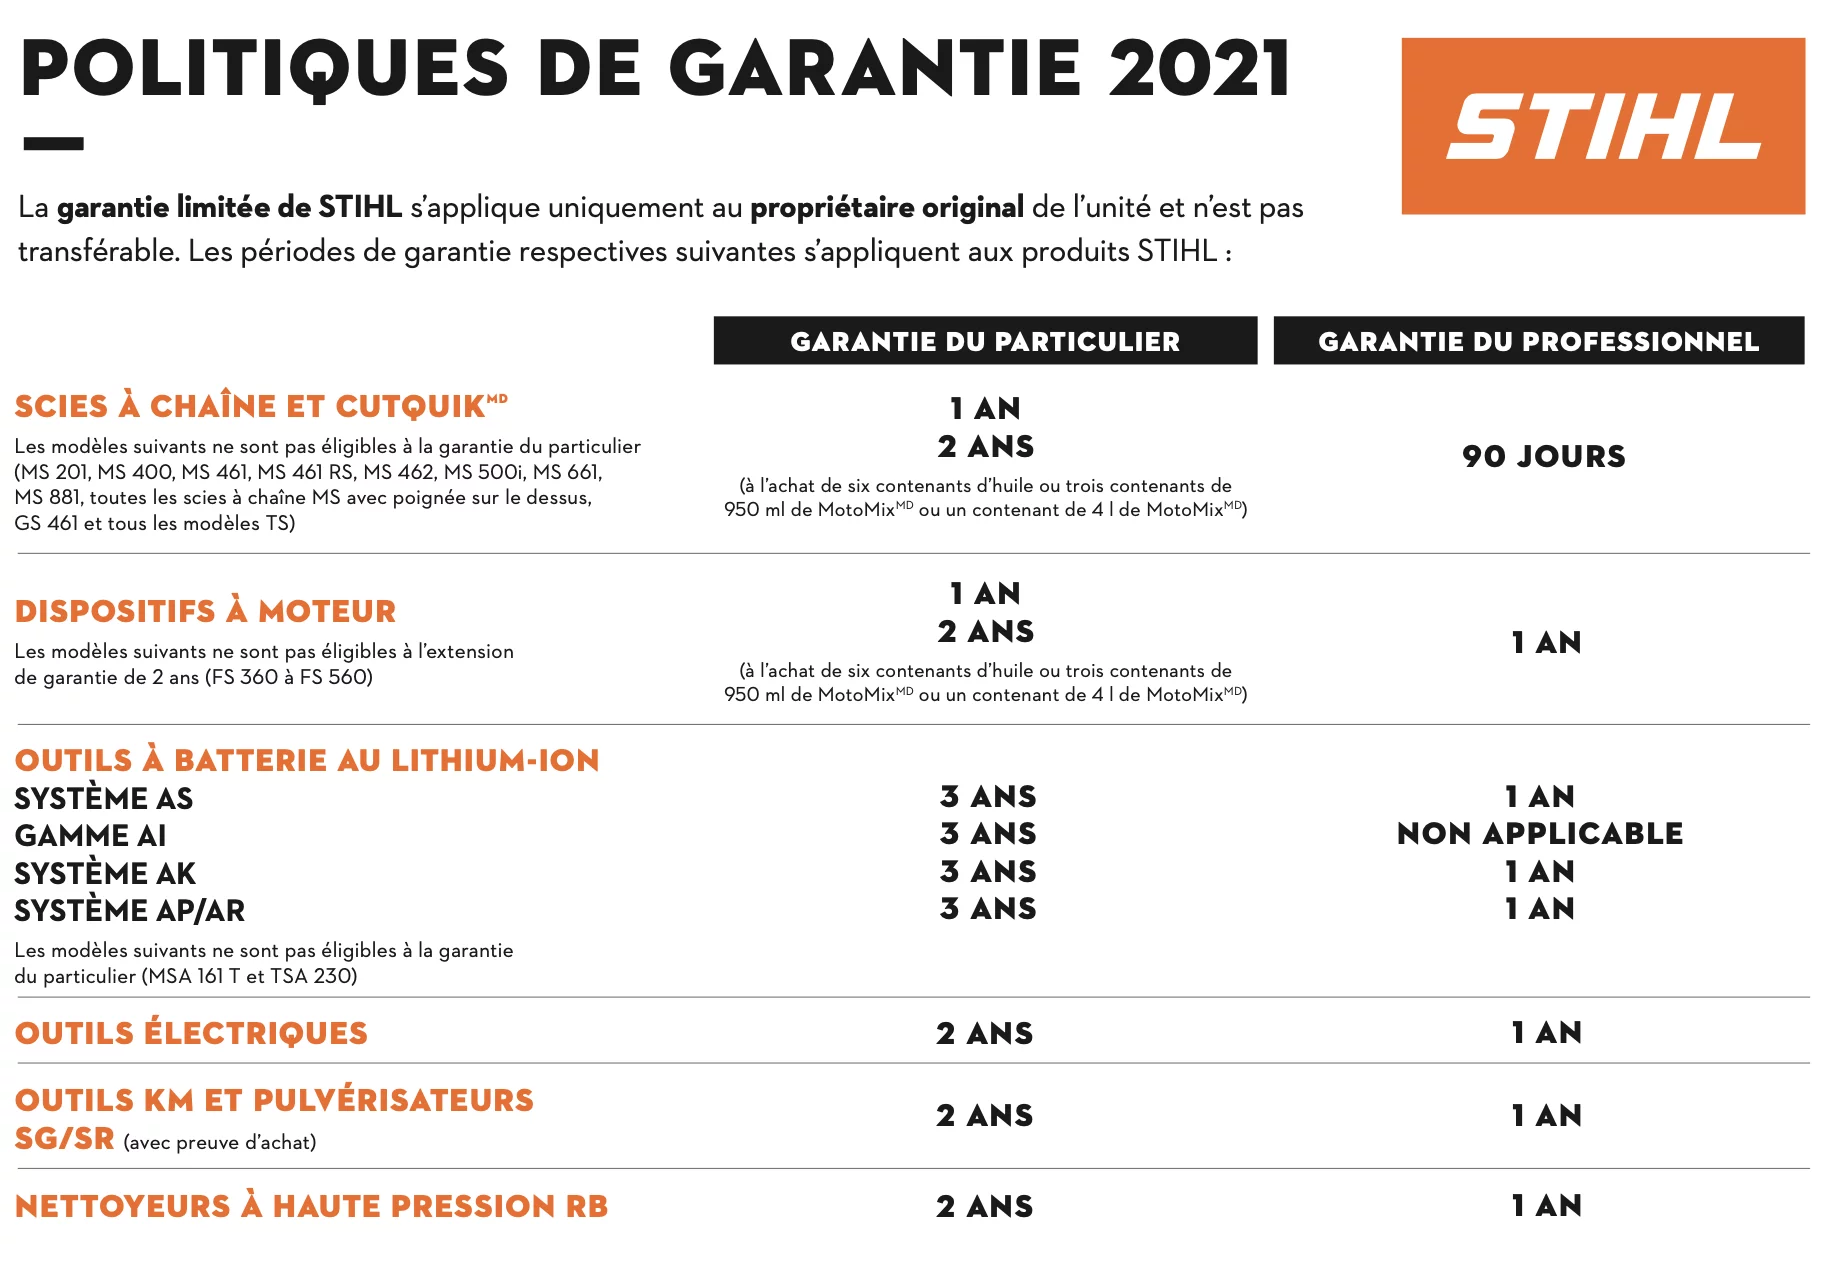 Politique de garantie STIHL 2021 - D mini moteurs - Laval